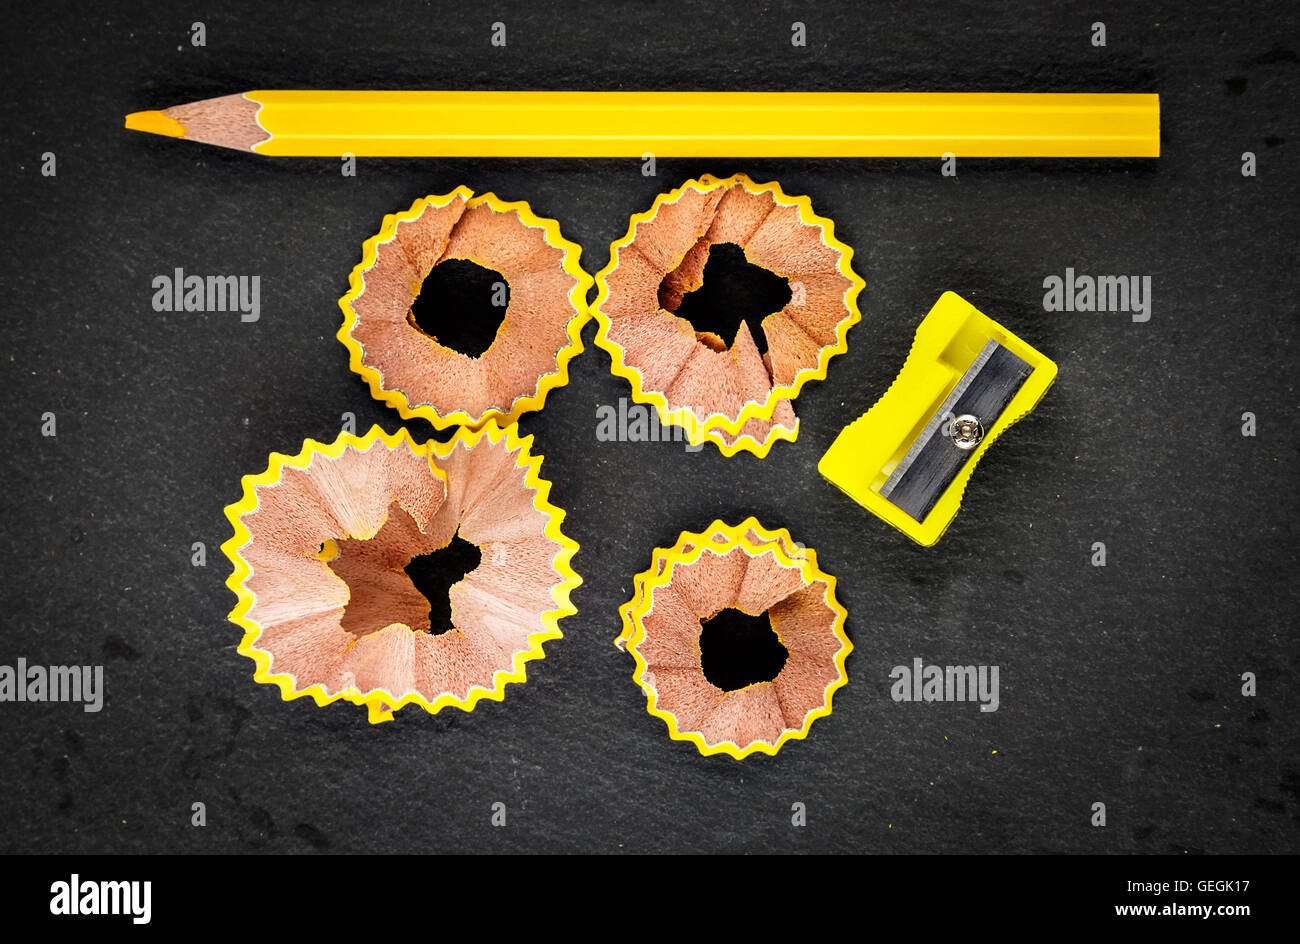 Copeaux de crayon jaune, jaune et jaune Taille-crayon sur fond noir. Image horizontale. Banque D'Images